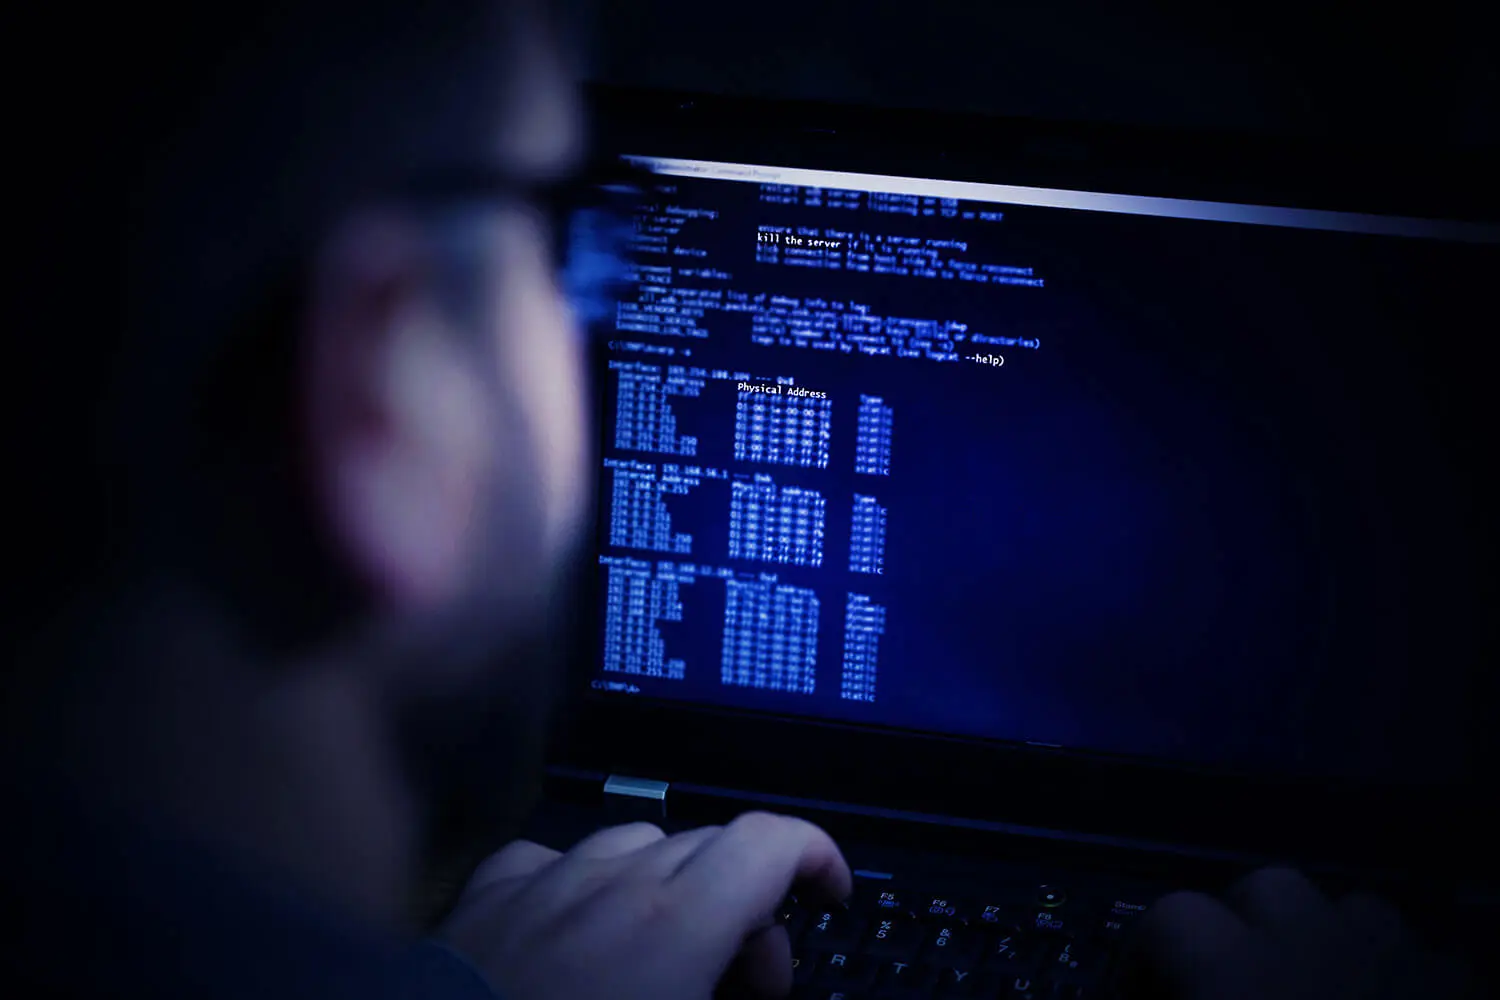 Ein Bild, das einen Mann zeigt, der am Computer-Hacking beteiligt ist.